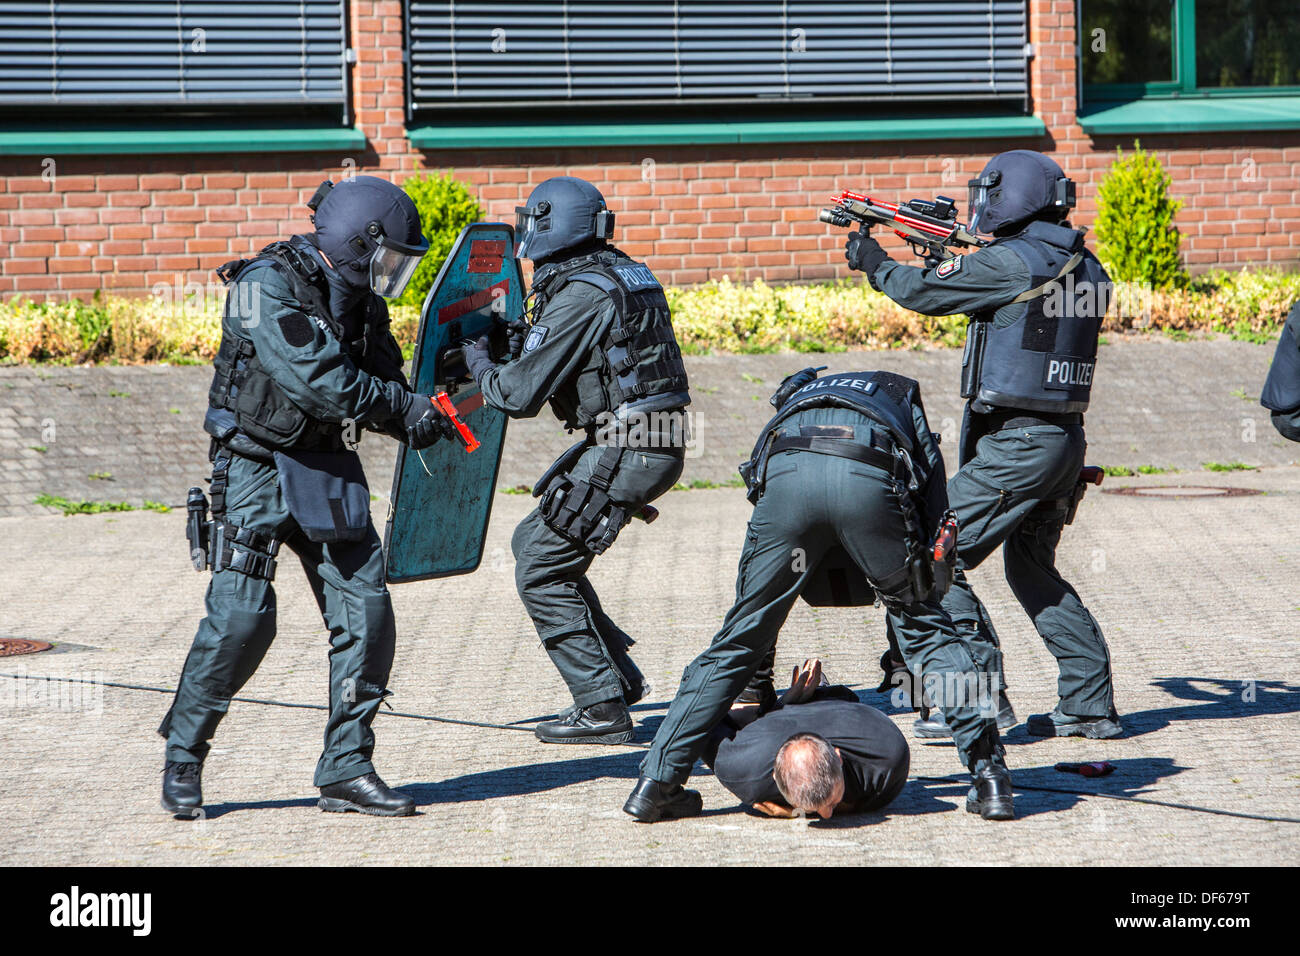 Polizei SWAT-Team trainieren, Rettung der Geiseln. Sondereinheiten der Polizei. Hostage Rescue Team. Stockfoto